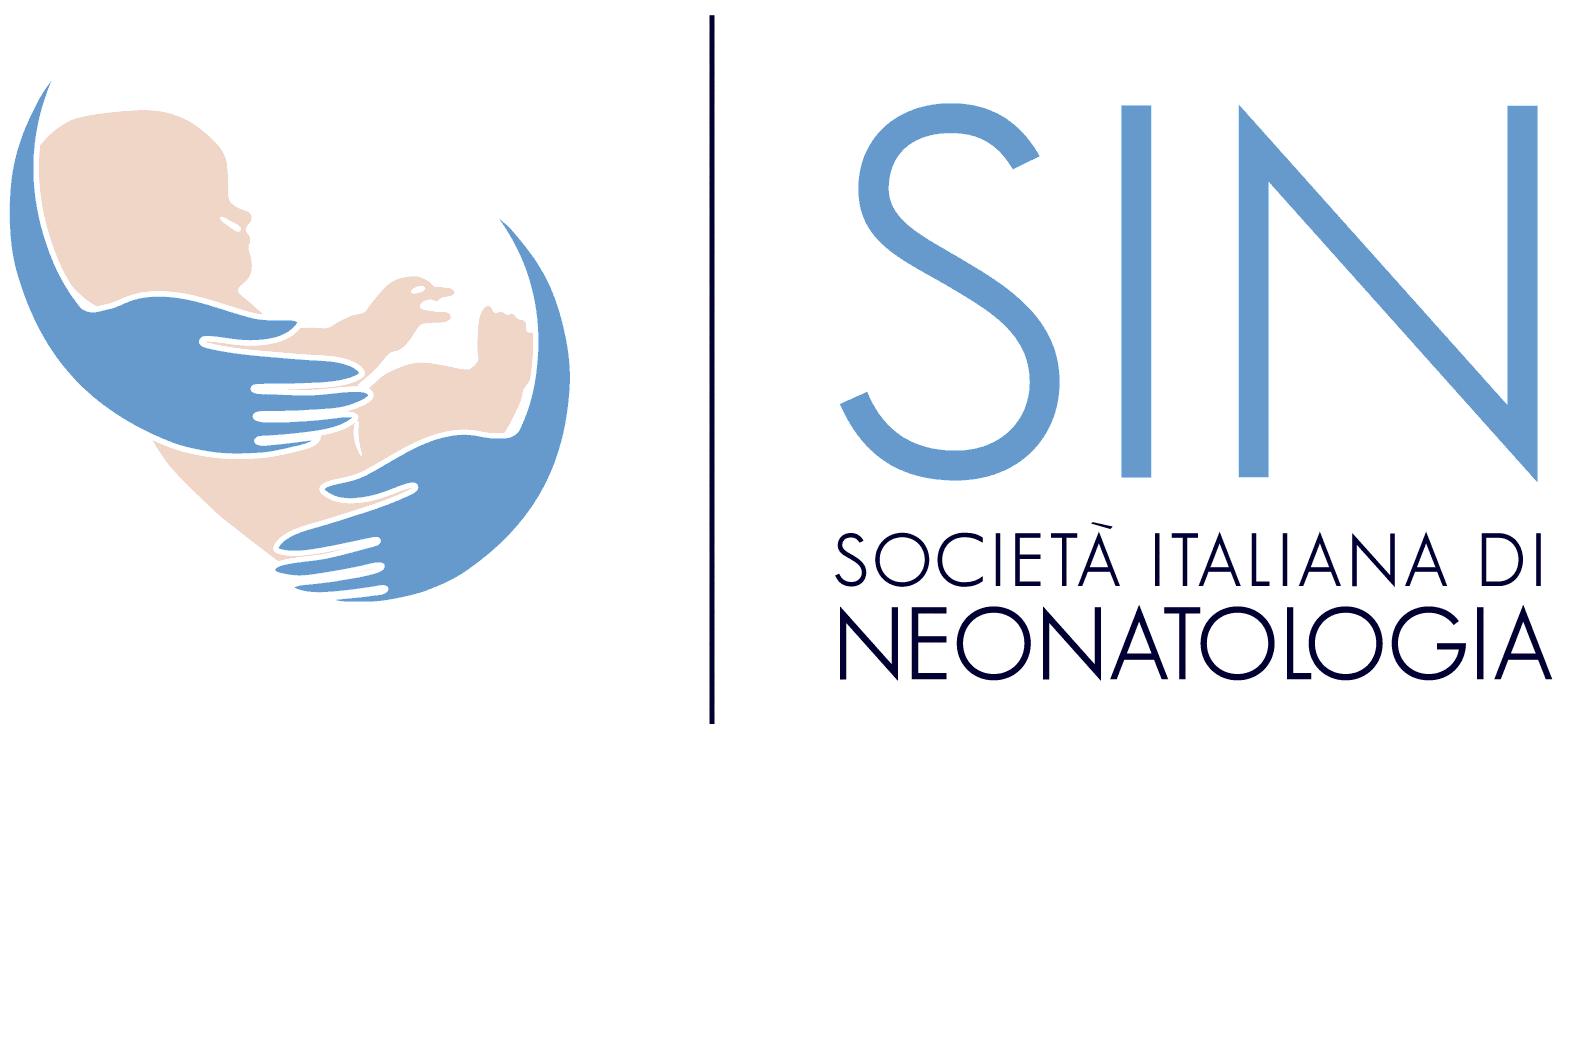 A Pavia il congresso sulle infezioni neonatali tra attualità e novità. Appuntamento con esperti italiani e internazionali 